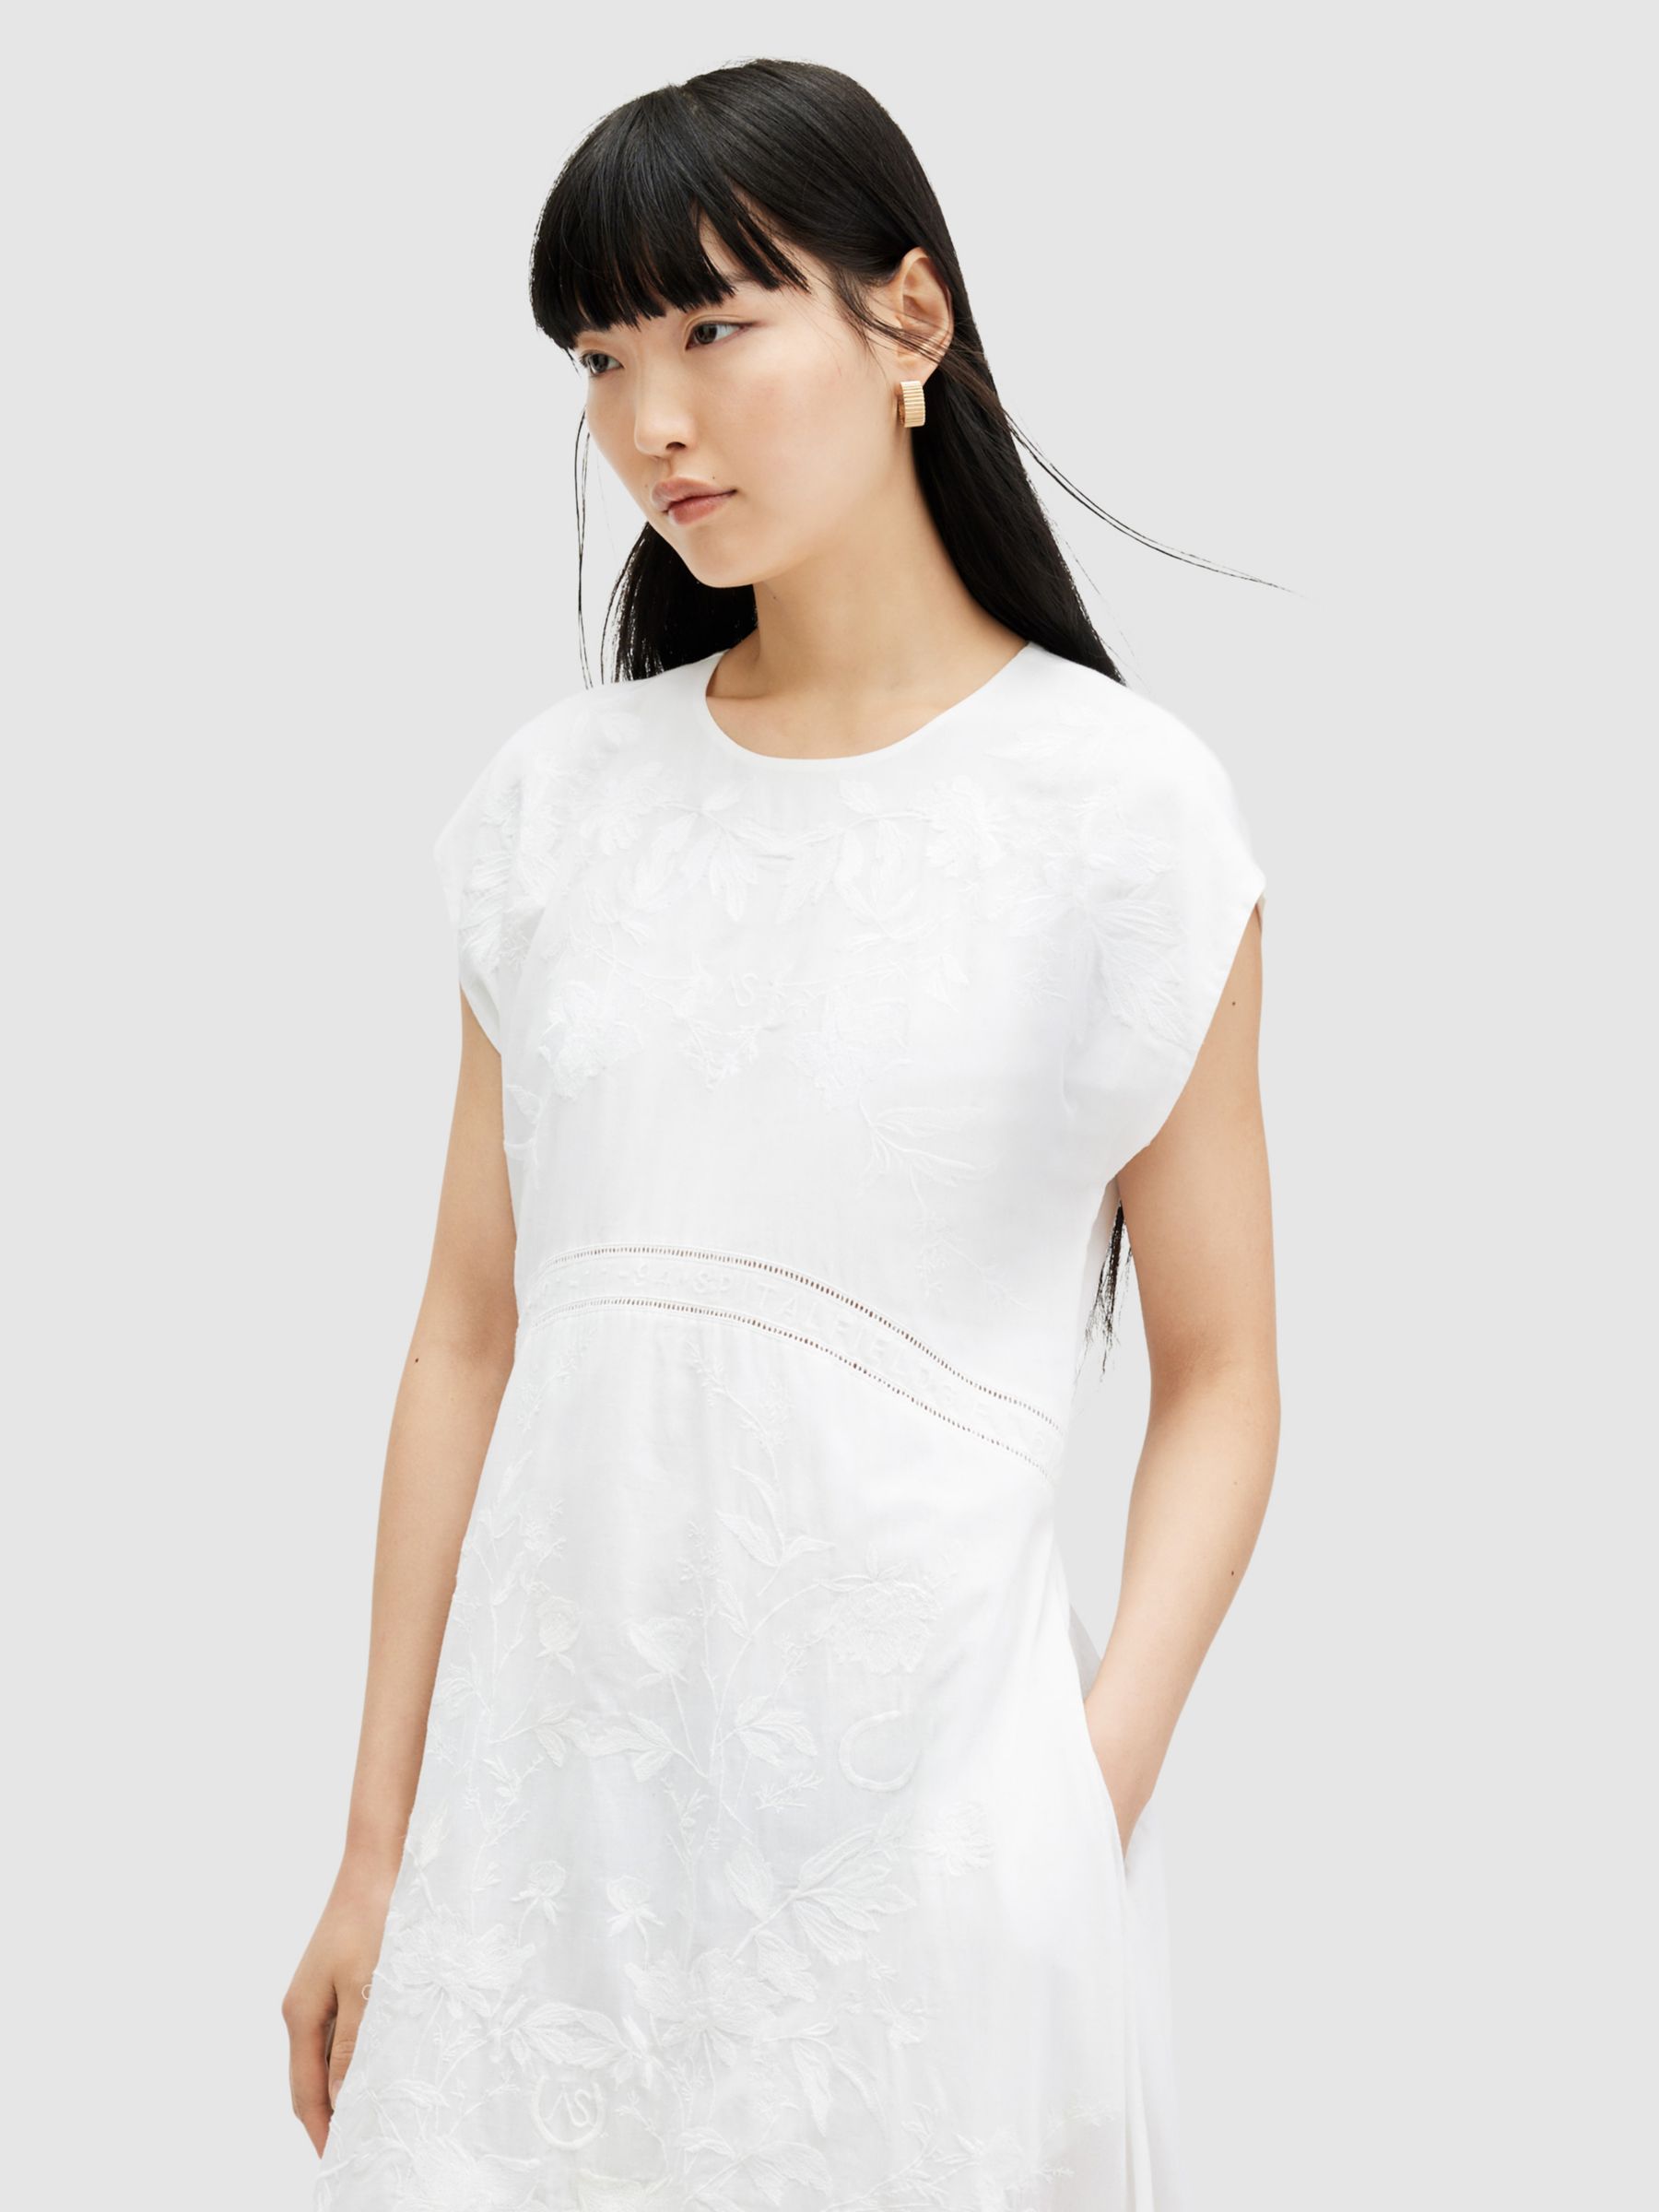 AllSaints Gianna Embroidered Midi Dress, Off White, 12